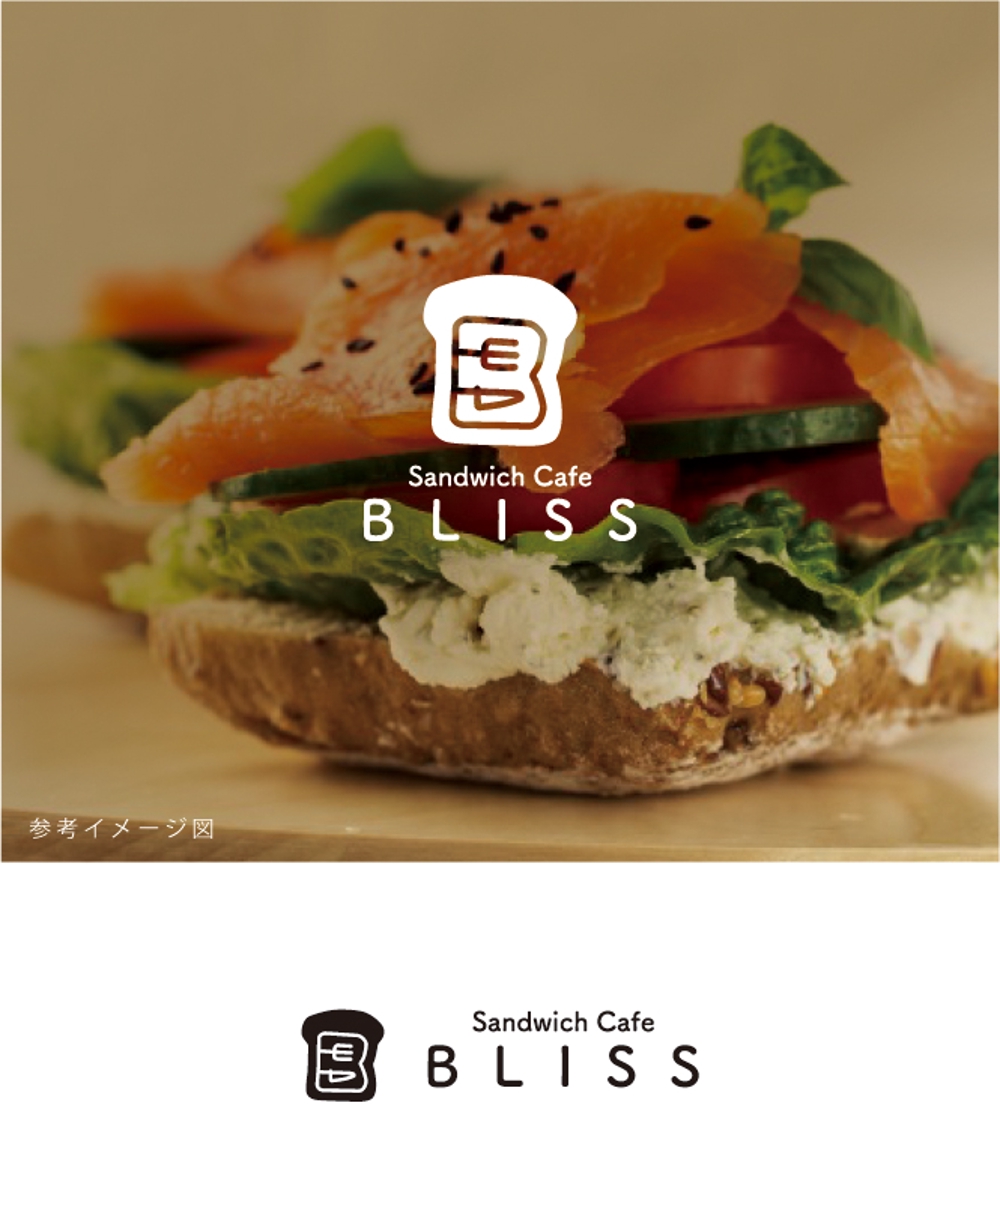 オープンサンドウィッチ店  【Sandwich Cafe  BLISS】のロゴ